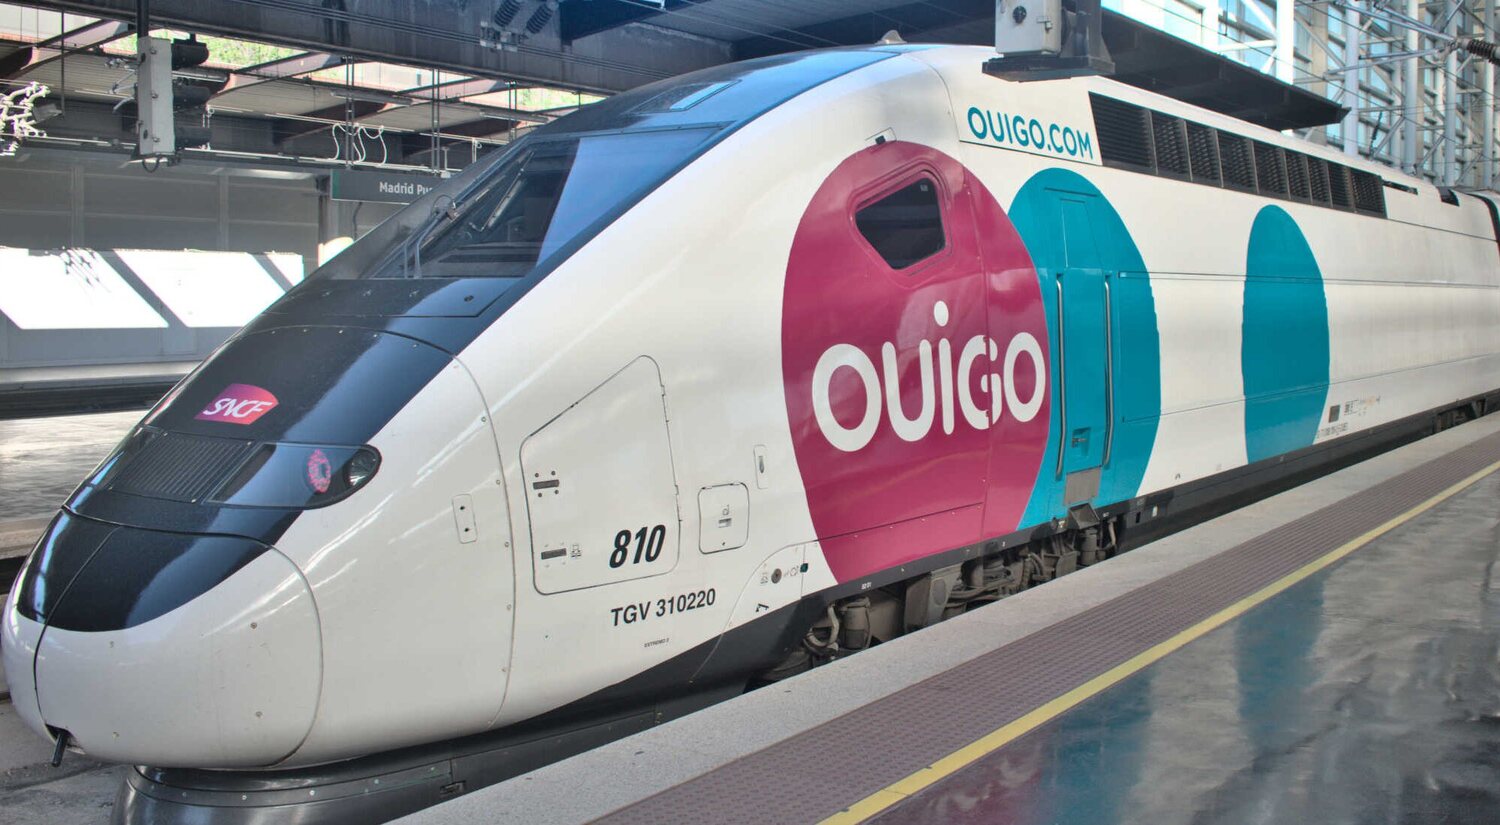 AVLO, Ouigo, Iryo... Los trenes low cost en España, explicados a detalle